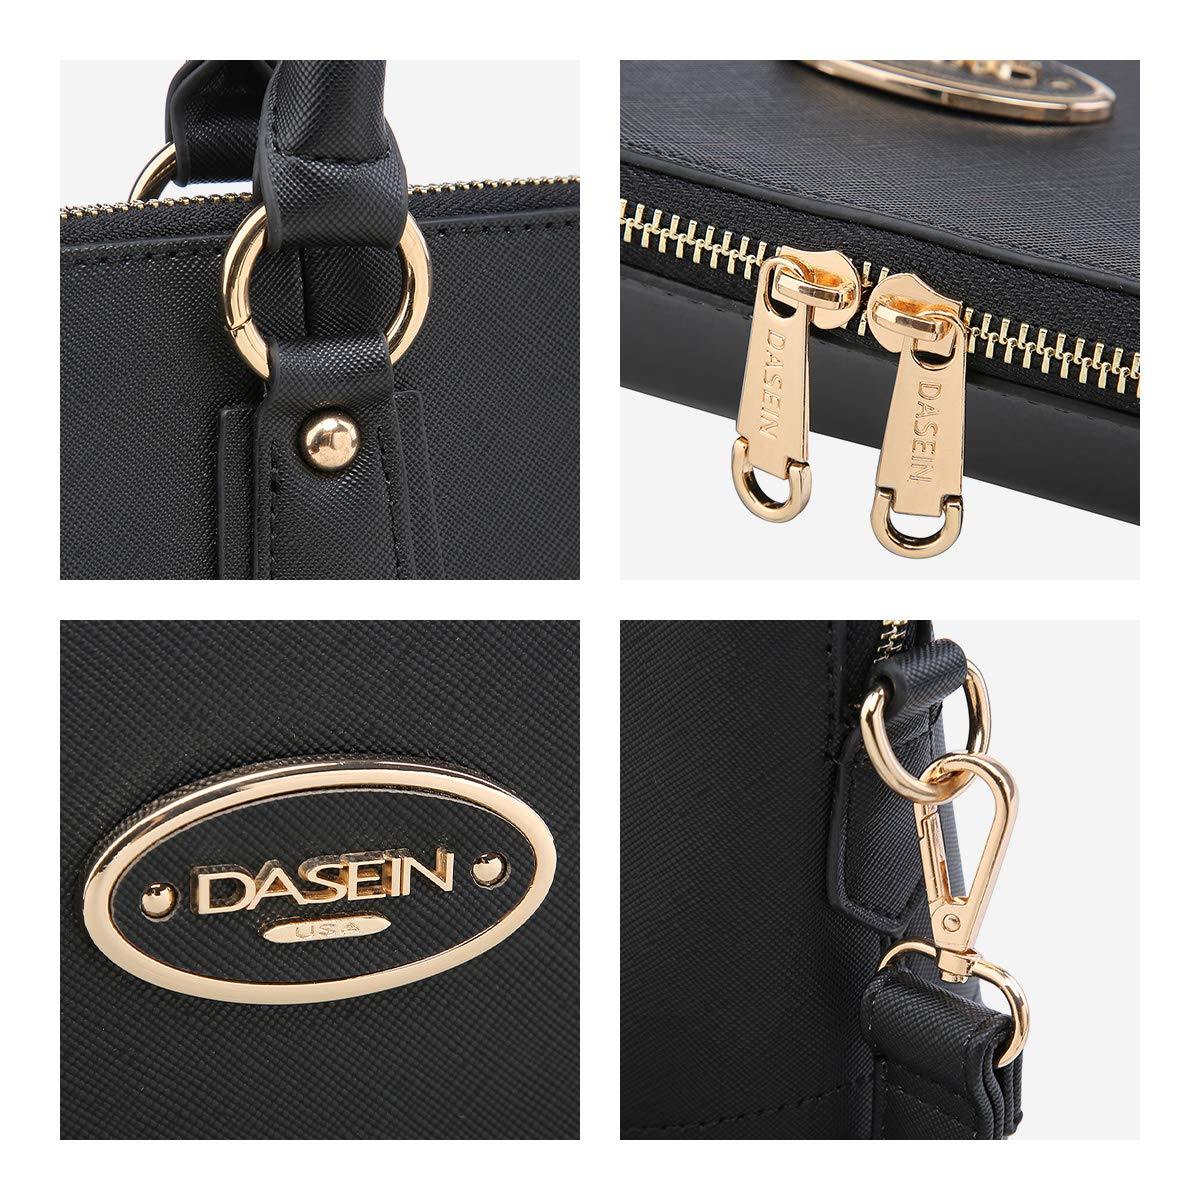 Dasein Slim Briefcase with Matching wallet